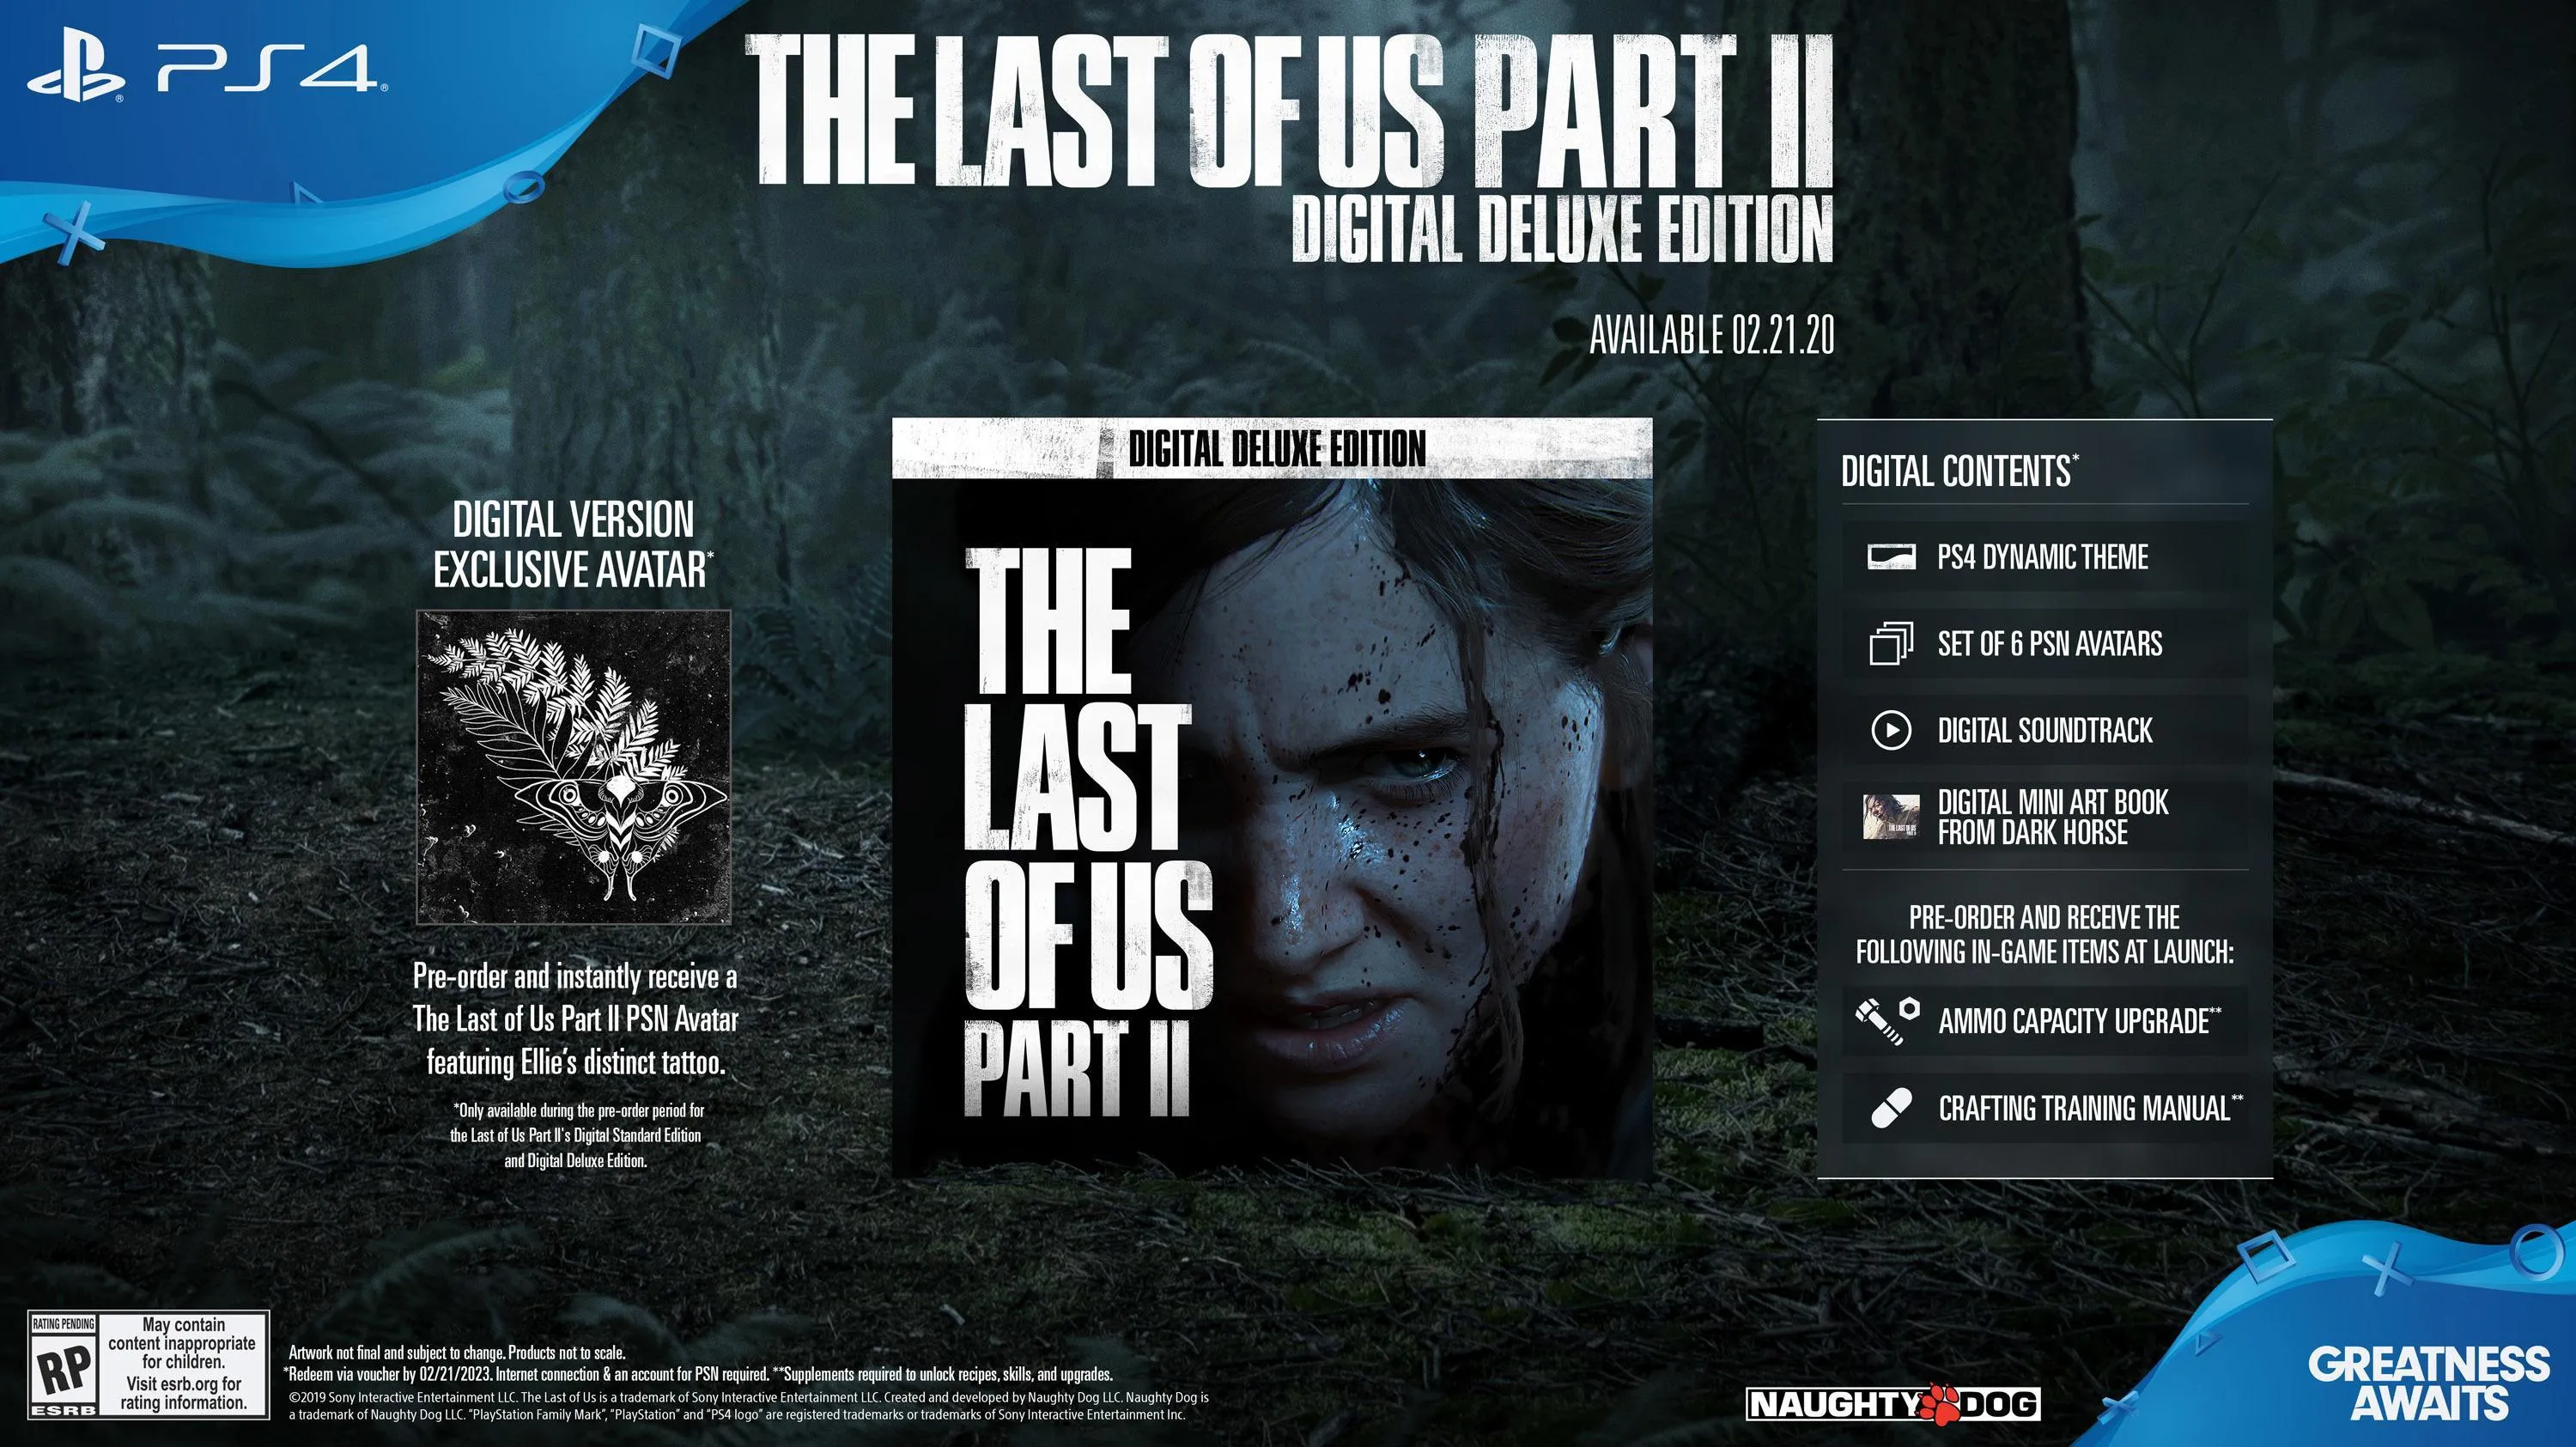 https://www.gamesatlas.com/images/jch-optimize/ng/images_the-last-of-us-2_the-last-of-us-2-digital-deluxe-edition.webp